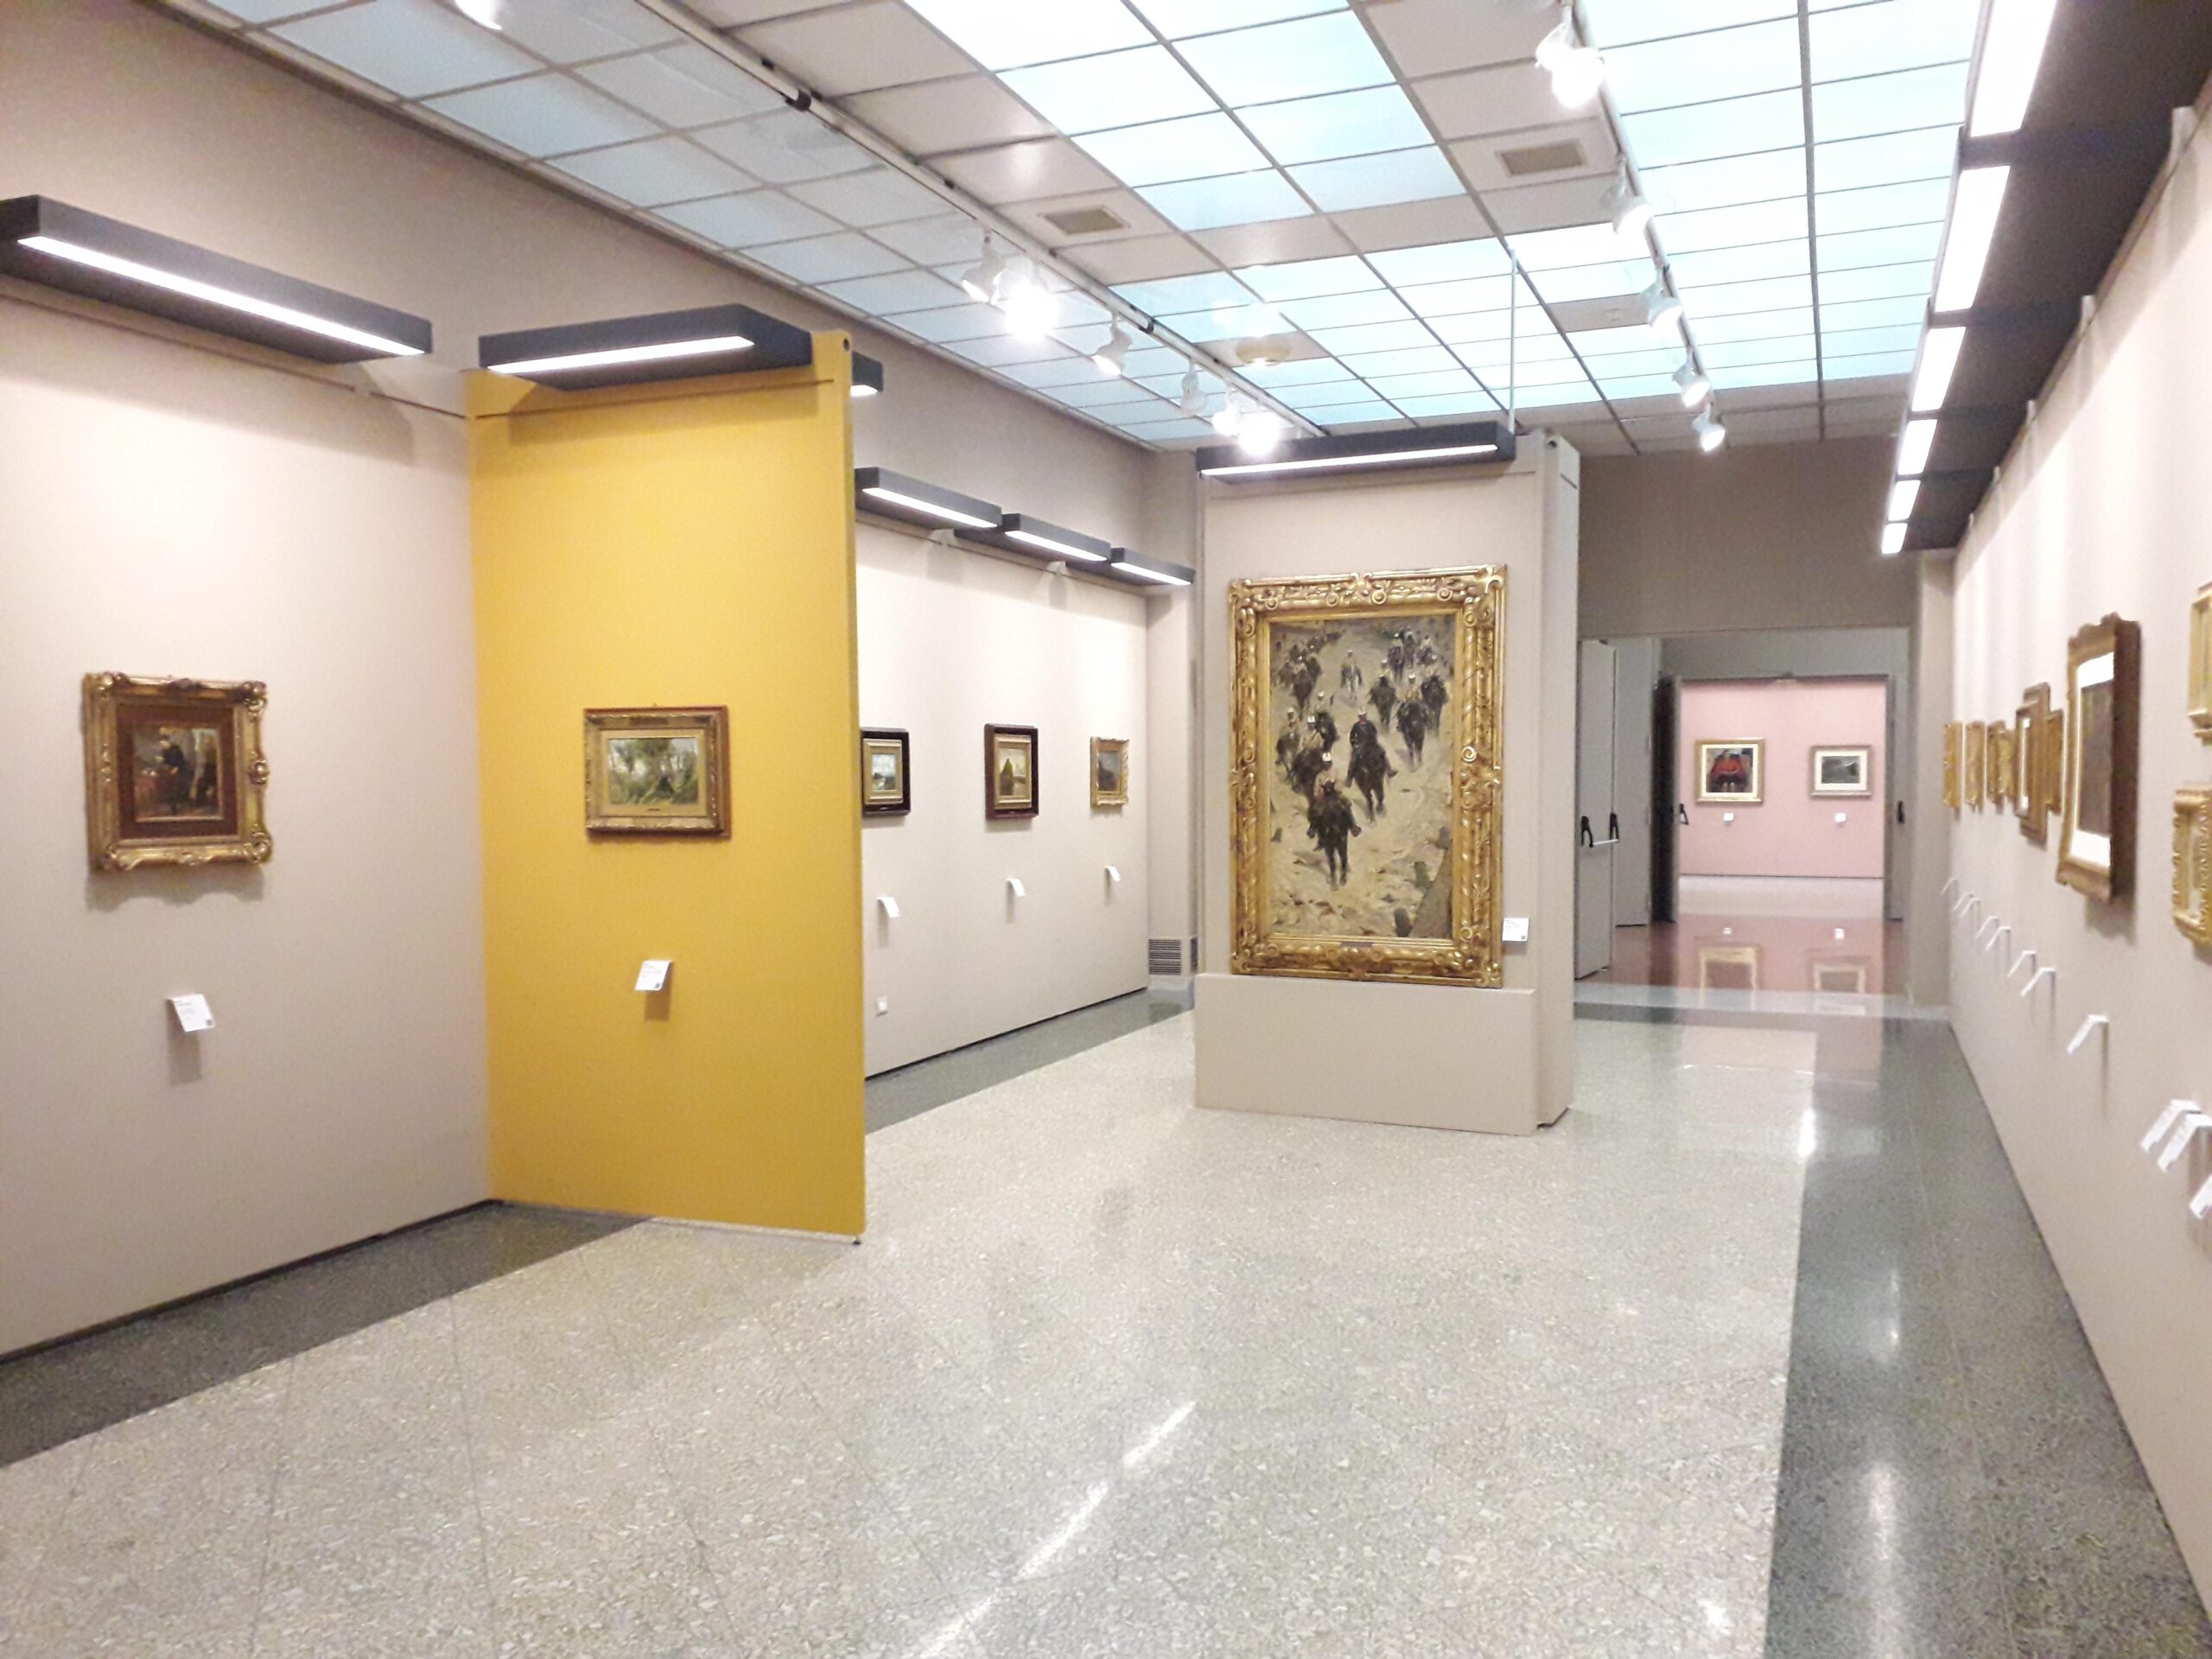 La pinacoteca di Bari raccoglie le opere più importanti degli artisti italiani dal medioevo all'età contemporanea